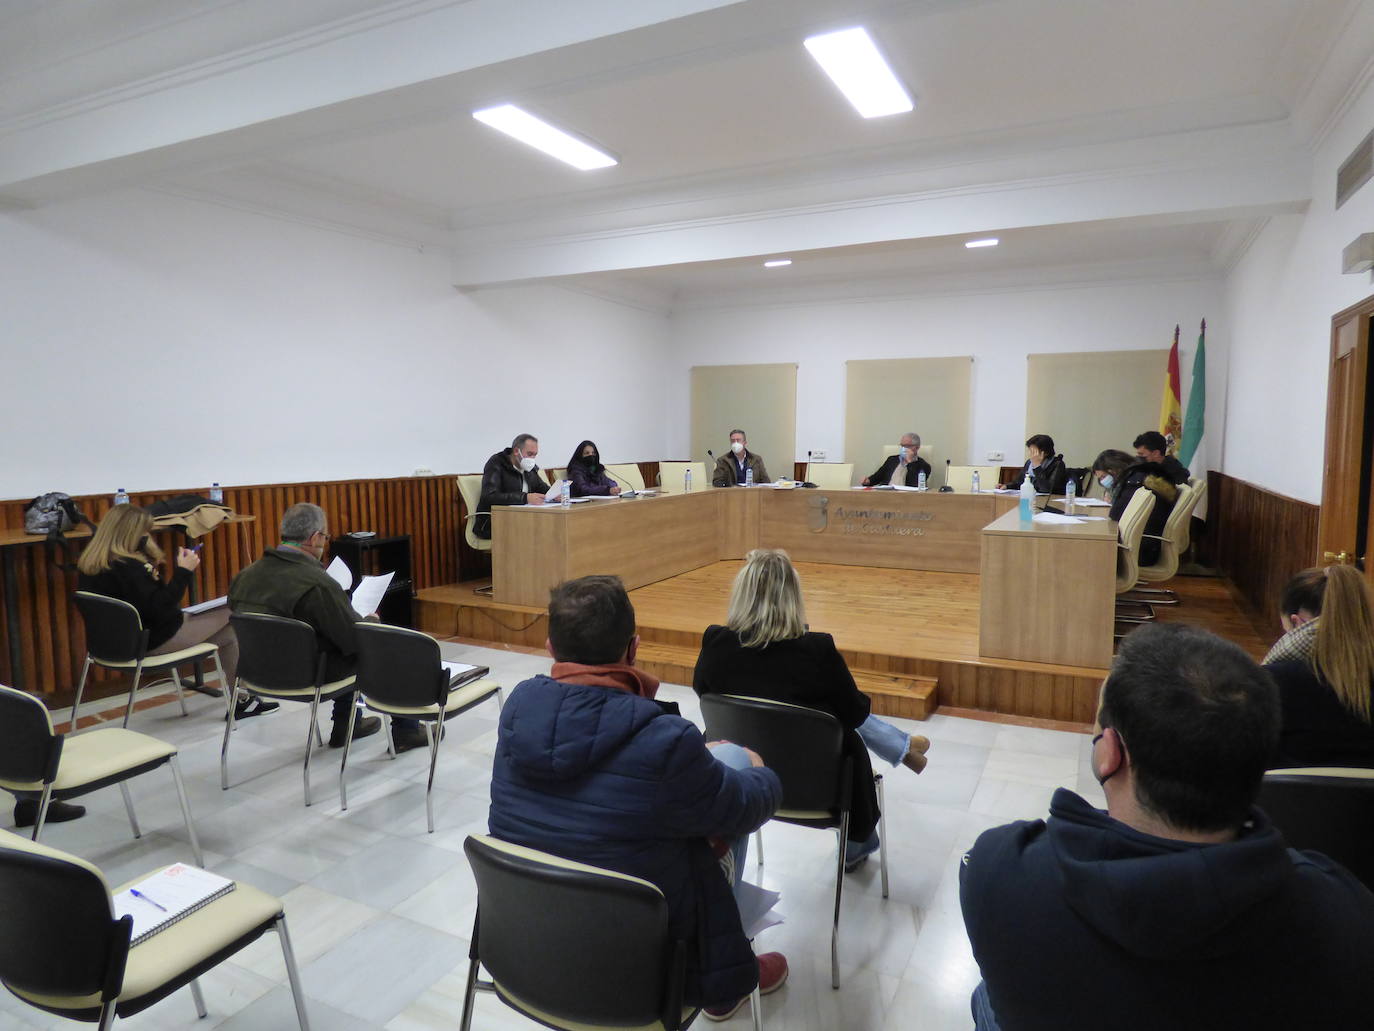 El Ayuntamiento de Castuera celebrará el jueves 10 de marzo un pleno extraordinario